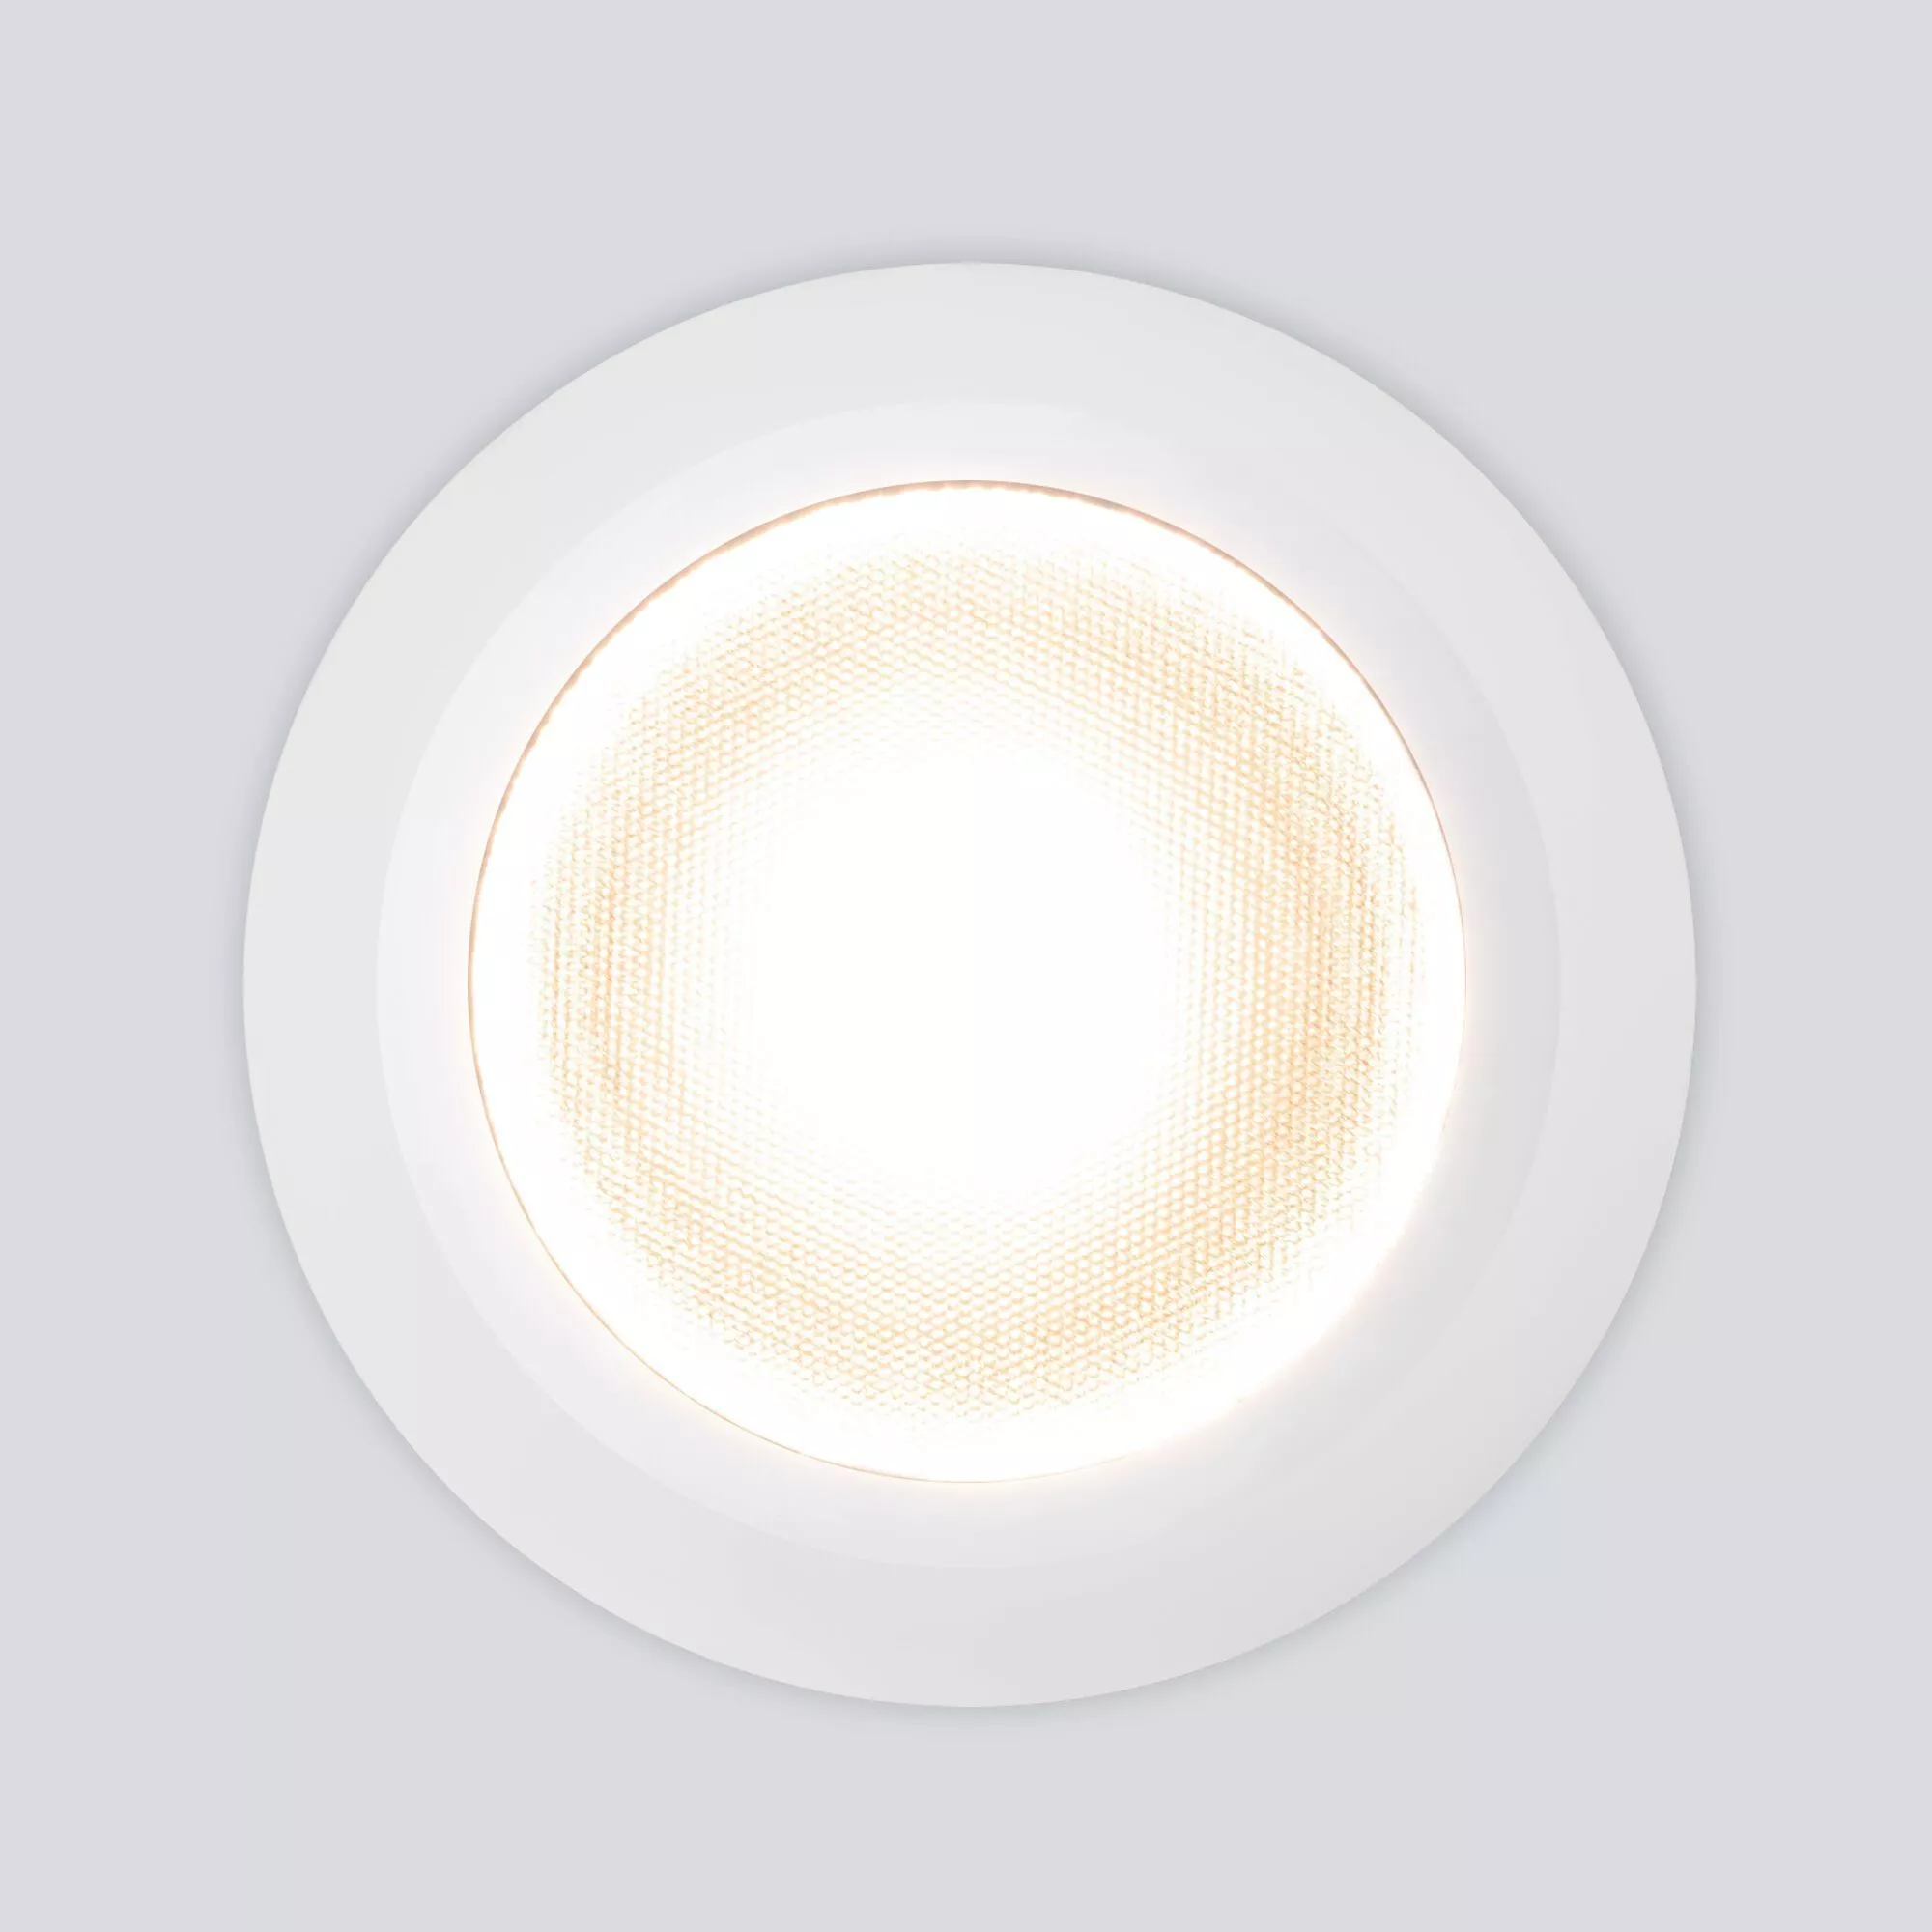 Точечный влагозащищенный светильник Elektrostandard Light LED 3003 35128/U Белый